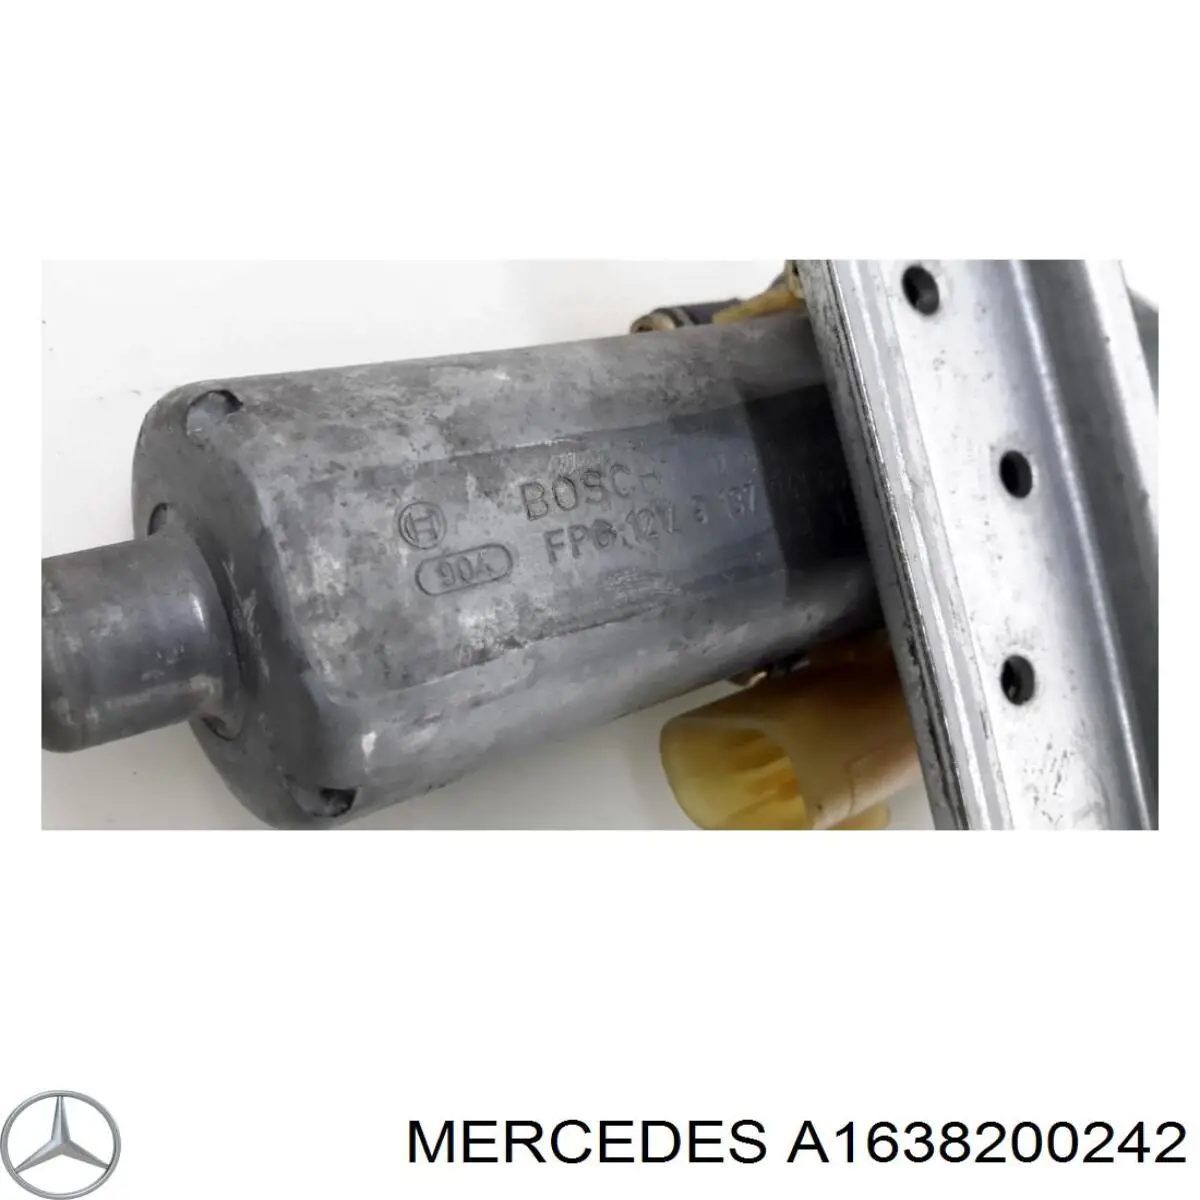 Motor eléctrico, elevalunas, puerta trasera derecha para Mercedes ML/GLE (W163)